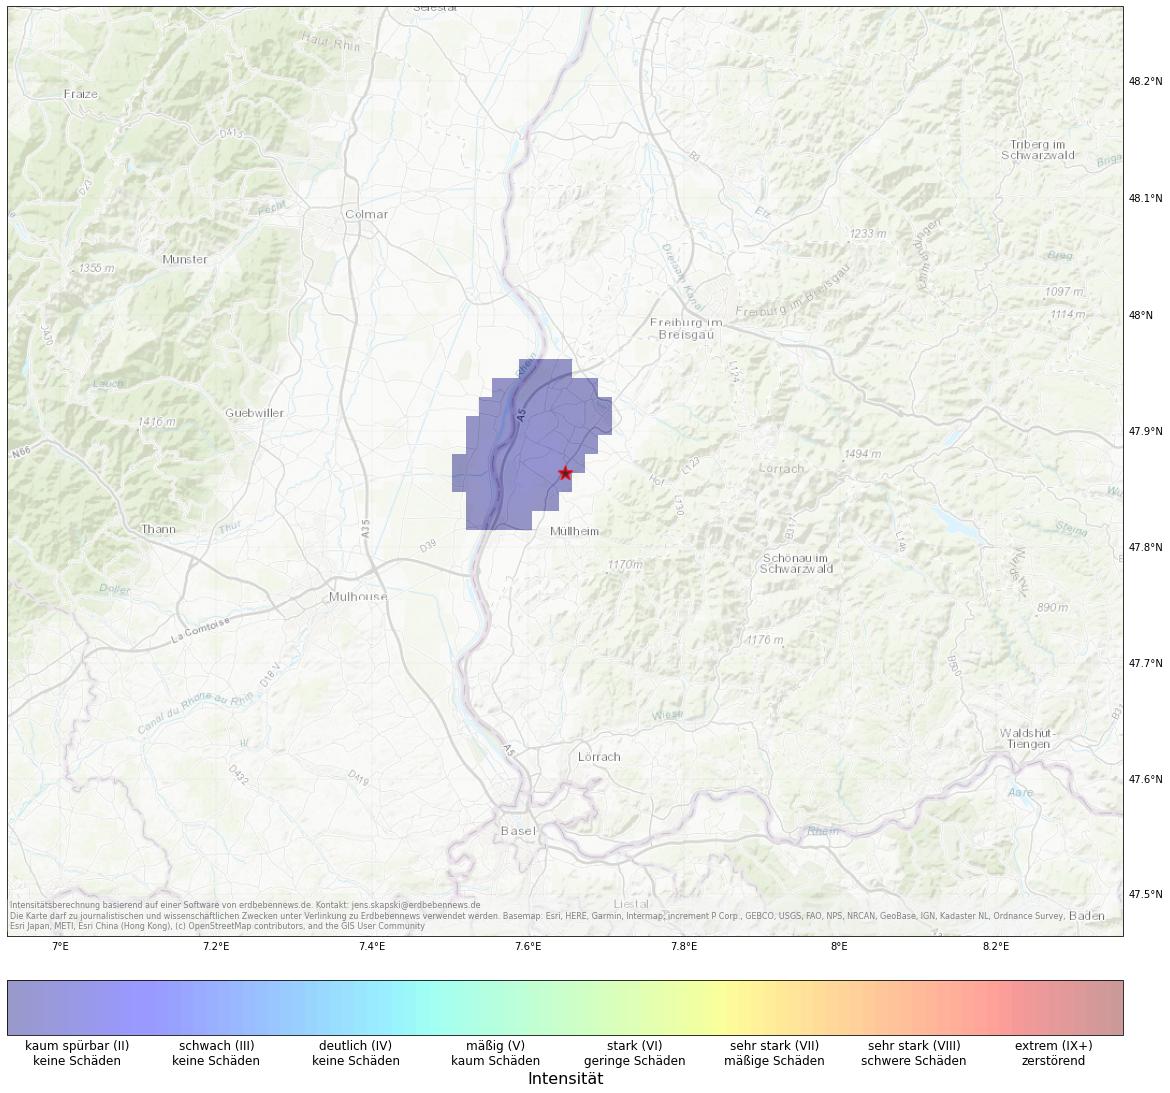 Berechnete Intensität (ShakeMap) des Erdbebens der Stärke 2.3 am 10. January, 02:16 in Frankreich